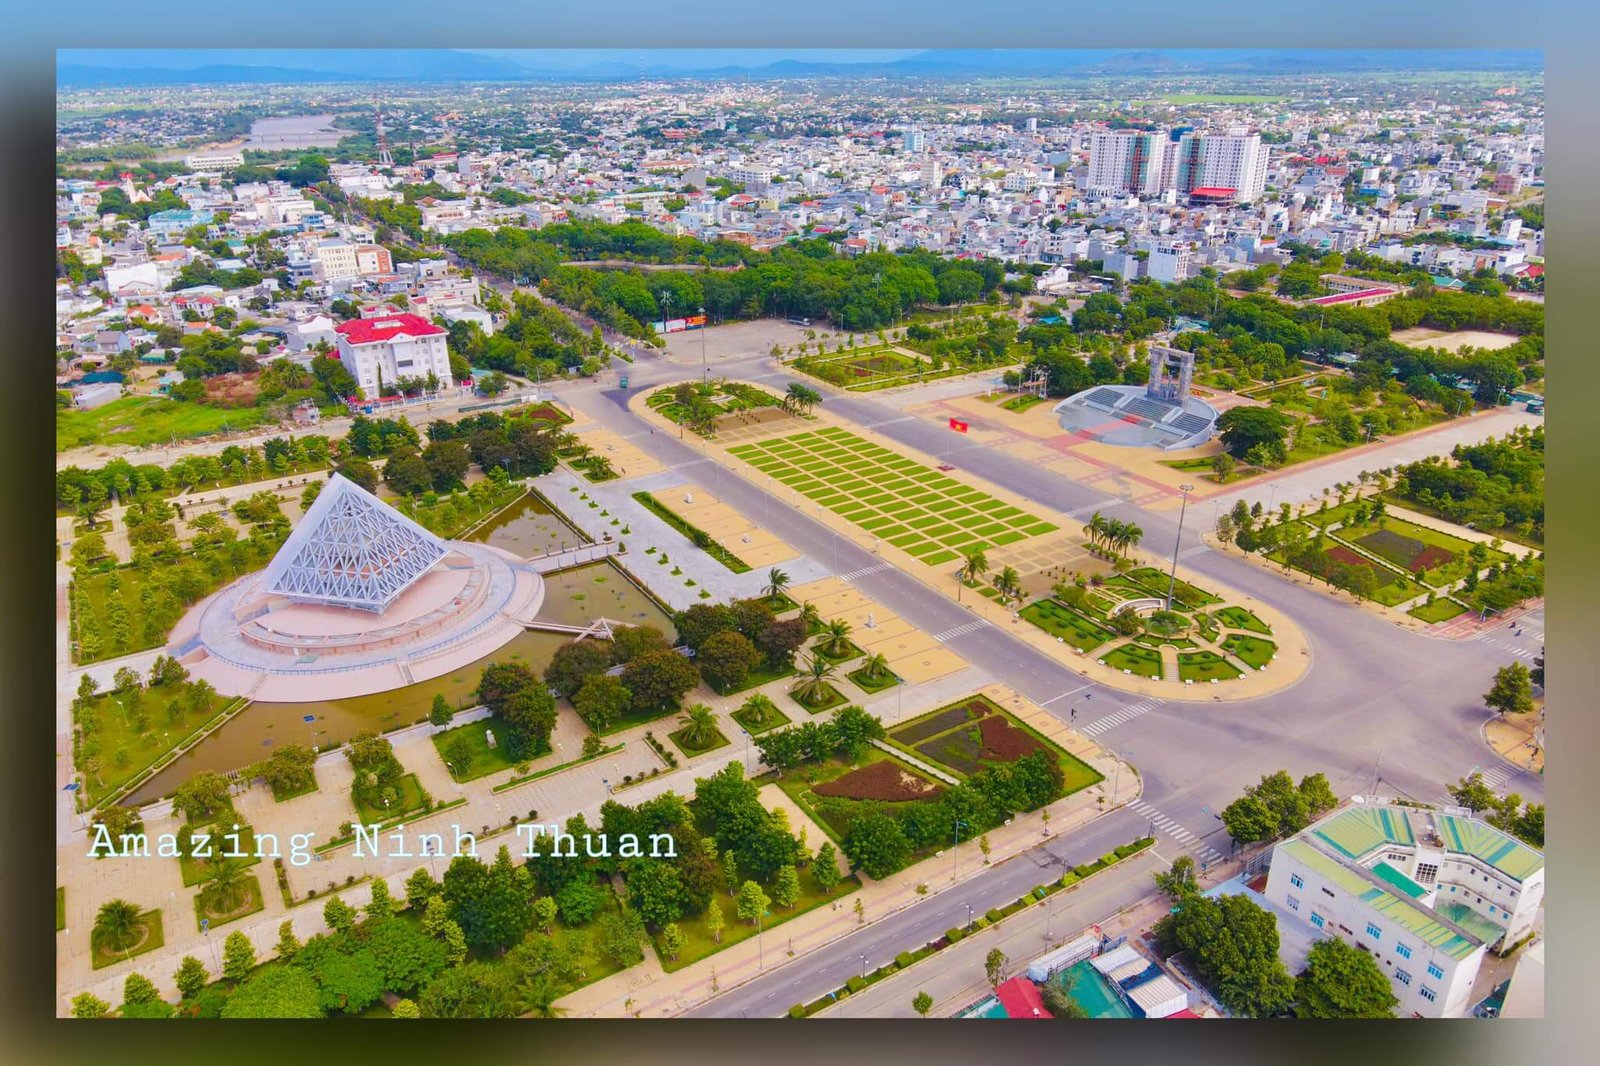 Thành phố trẻ Phan Rang - tỉnh lụy của Ninh Thuận. Ảnh: Trần Phương Trình